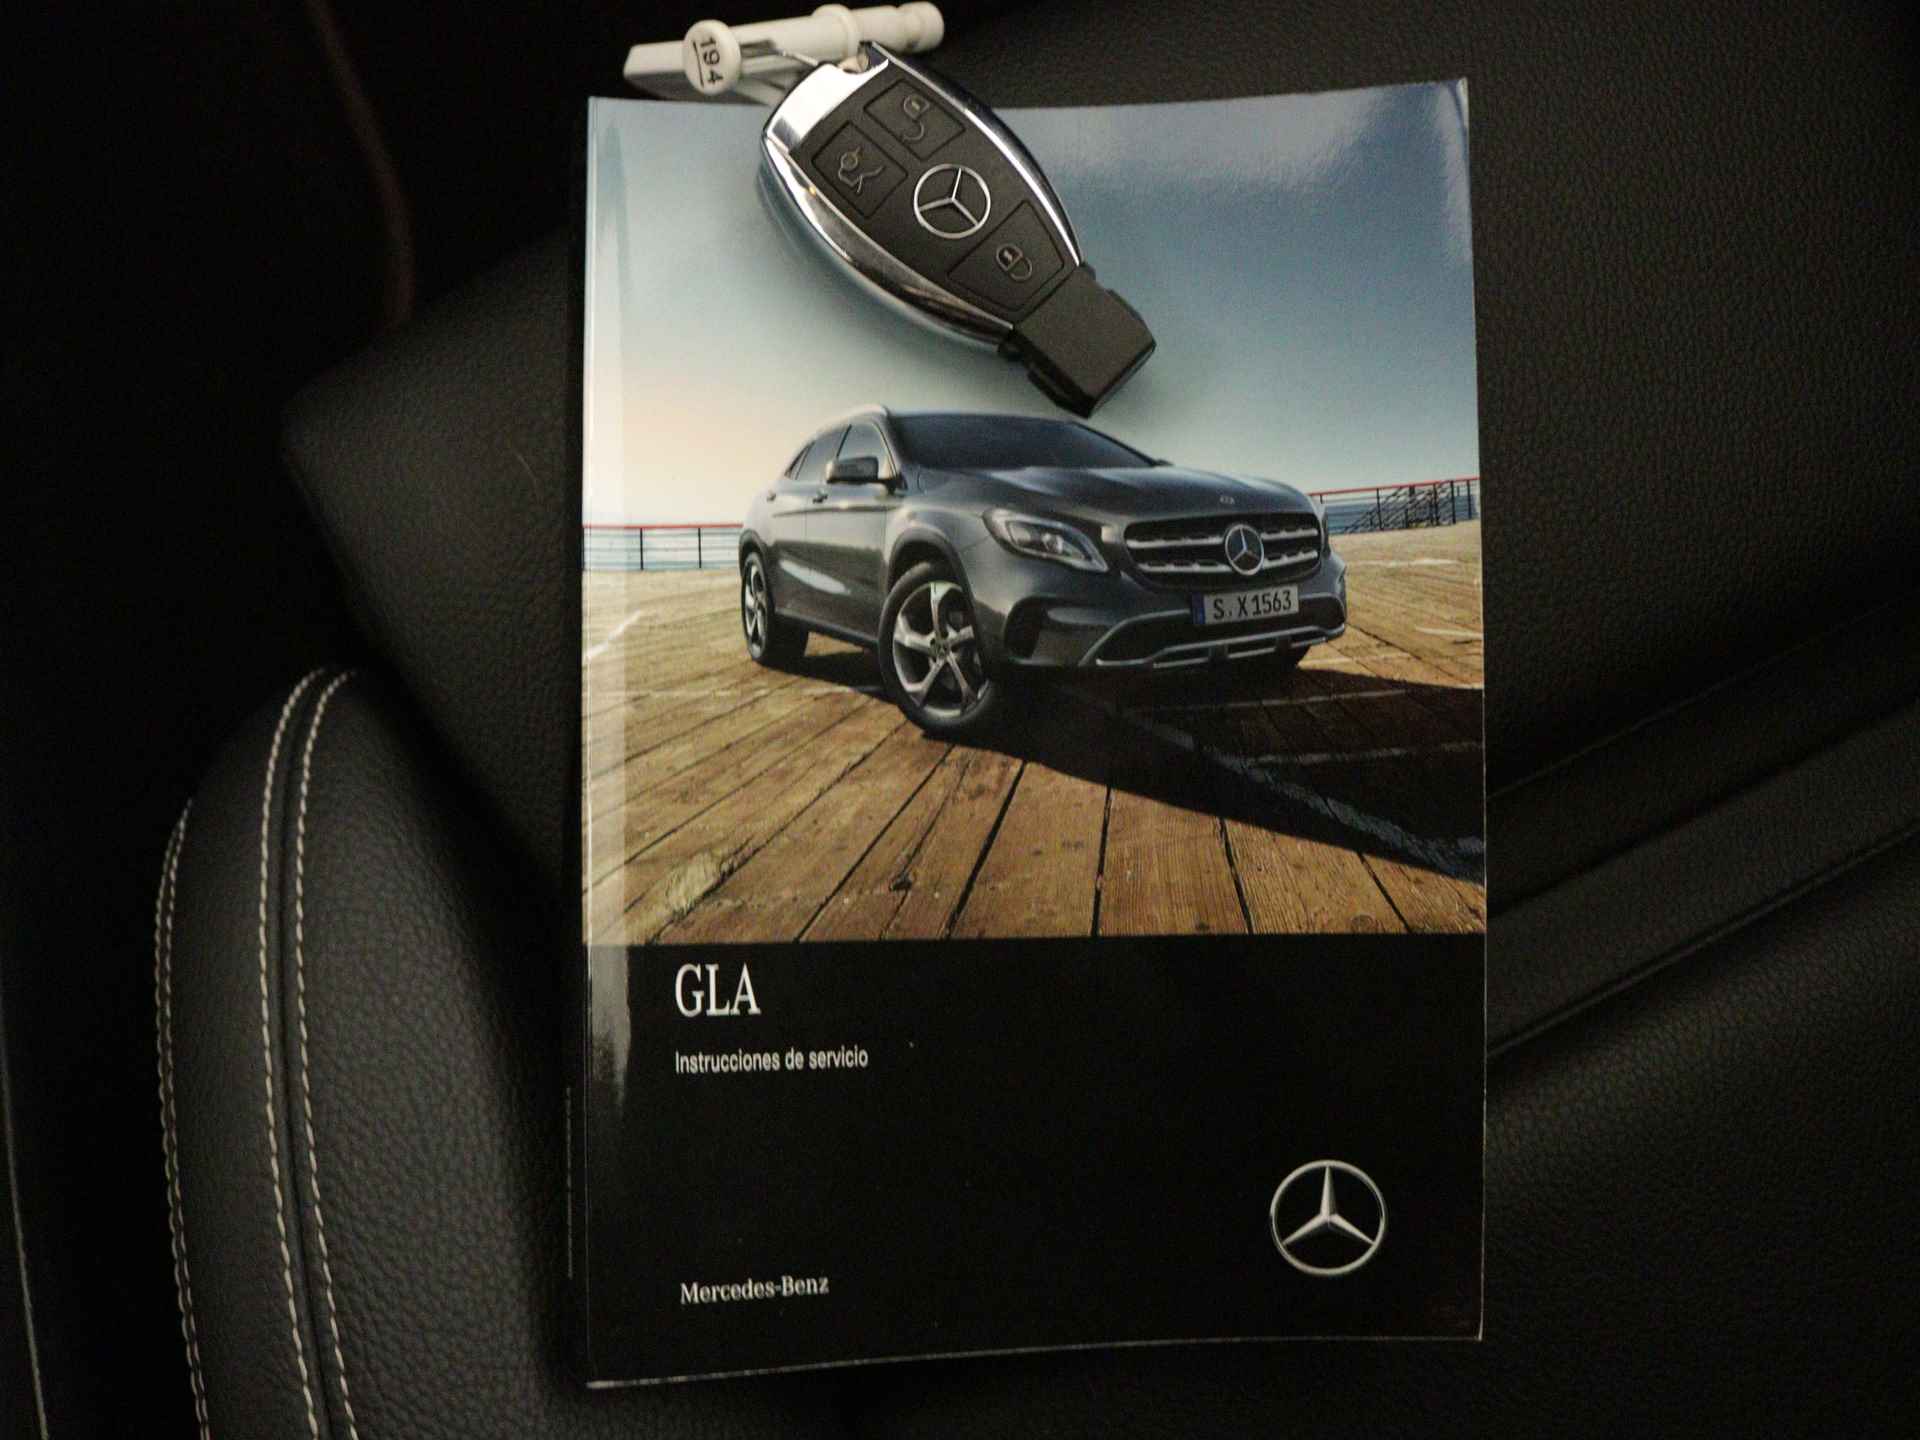 Mercedes-Benz GLA 200 AMG Premium Plus Limited | Multispaaks lichtmetalen velgen | Treeplanken | Navigatie | Parking support | Leder bekleding | inclusief 24 maanden MB Certified garantie voor europa - 12/39